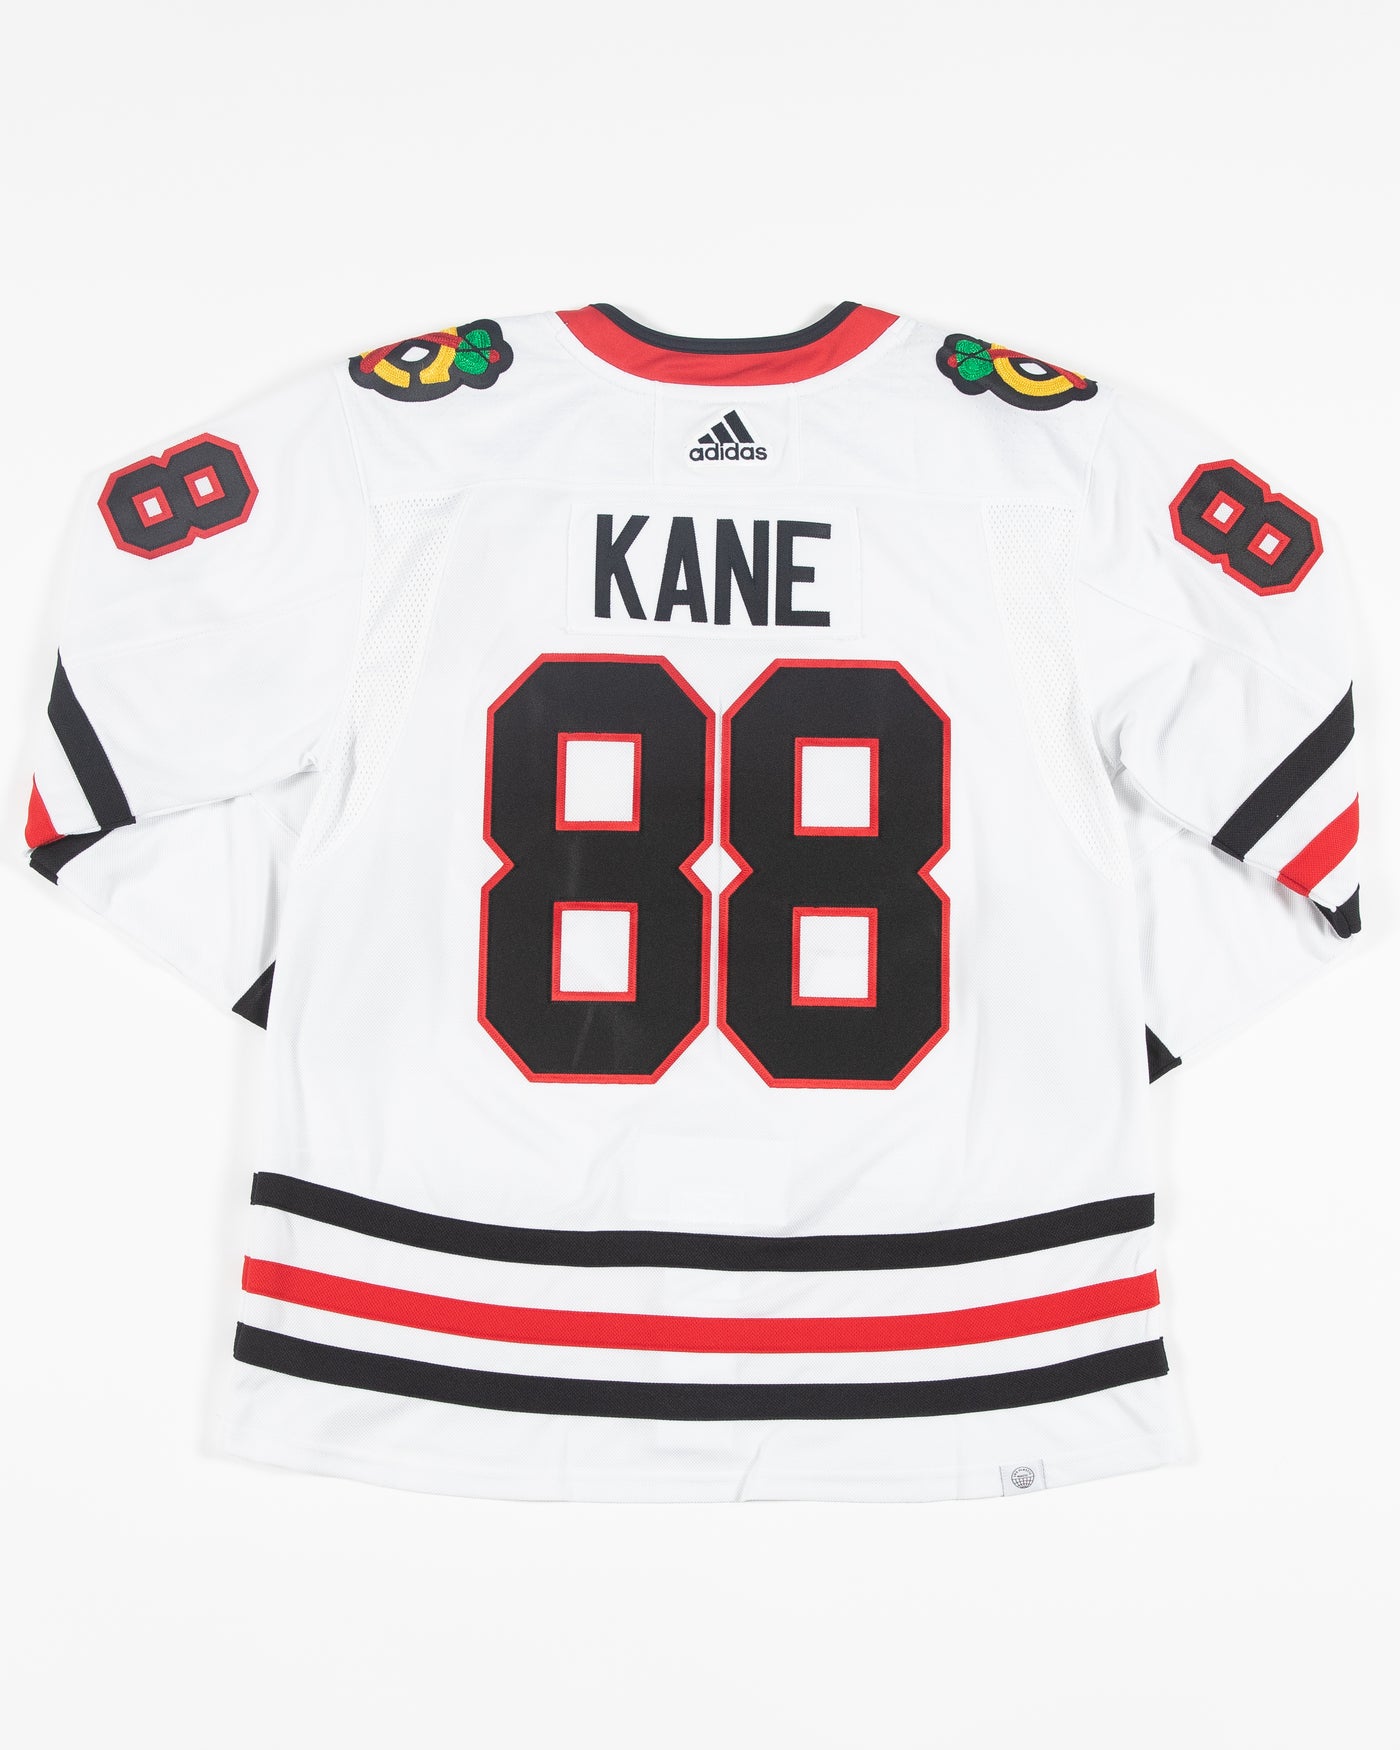 Patrick Kane Chicago Blackhawks Adidas Authentic Away NHL Hockey Jerse